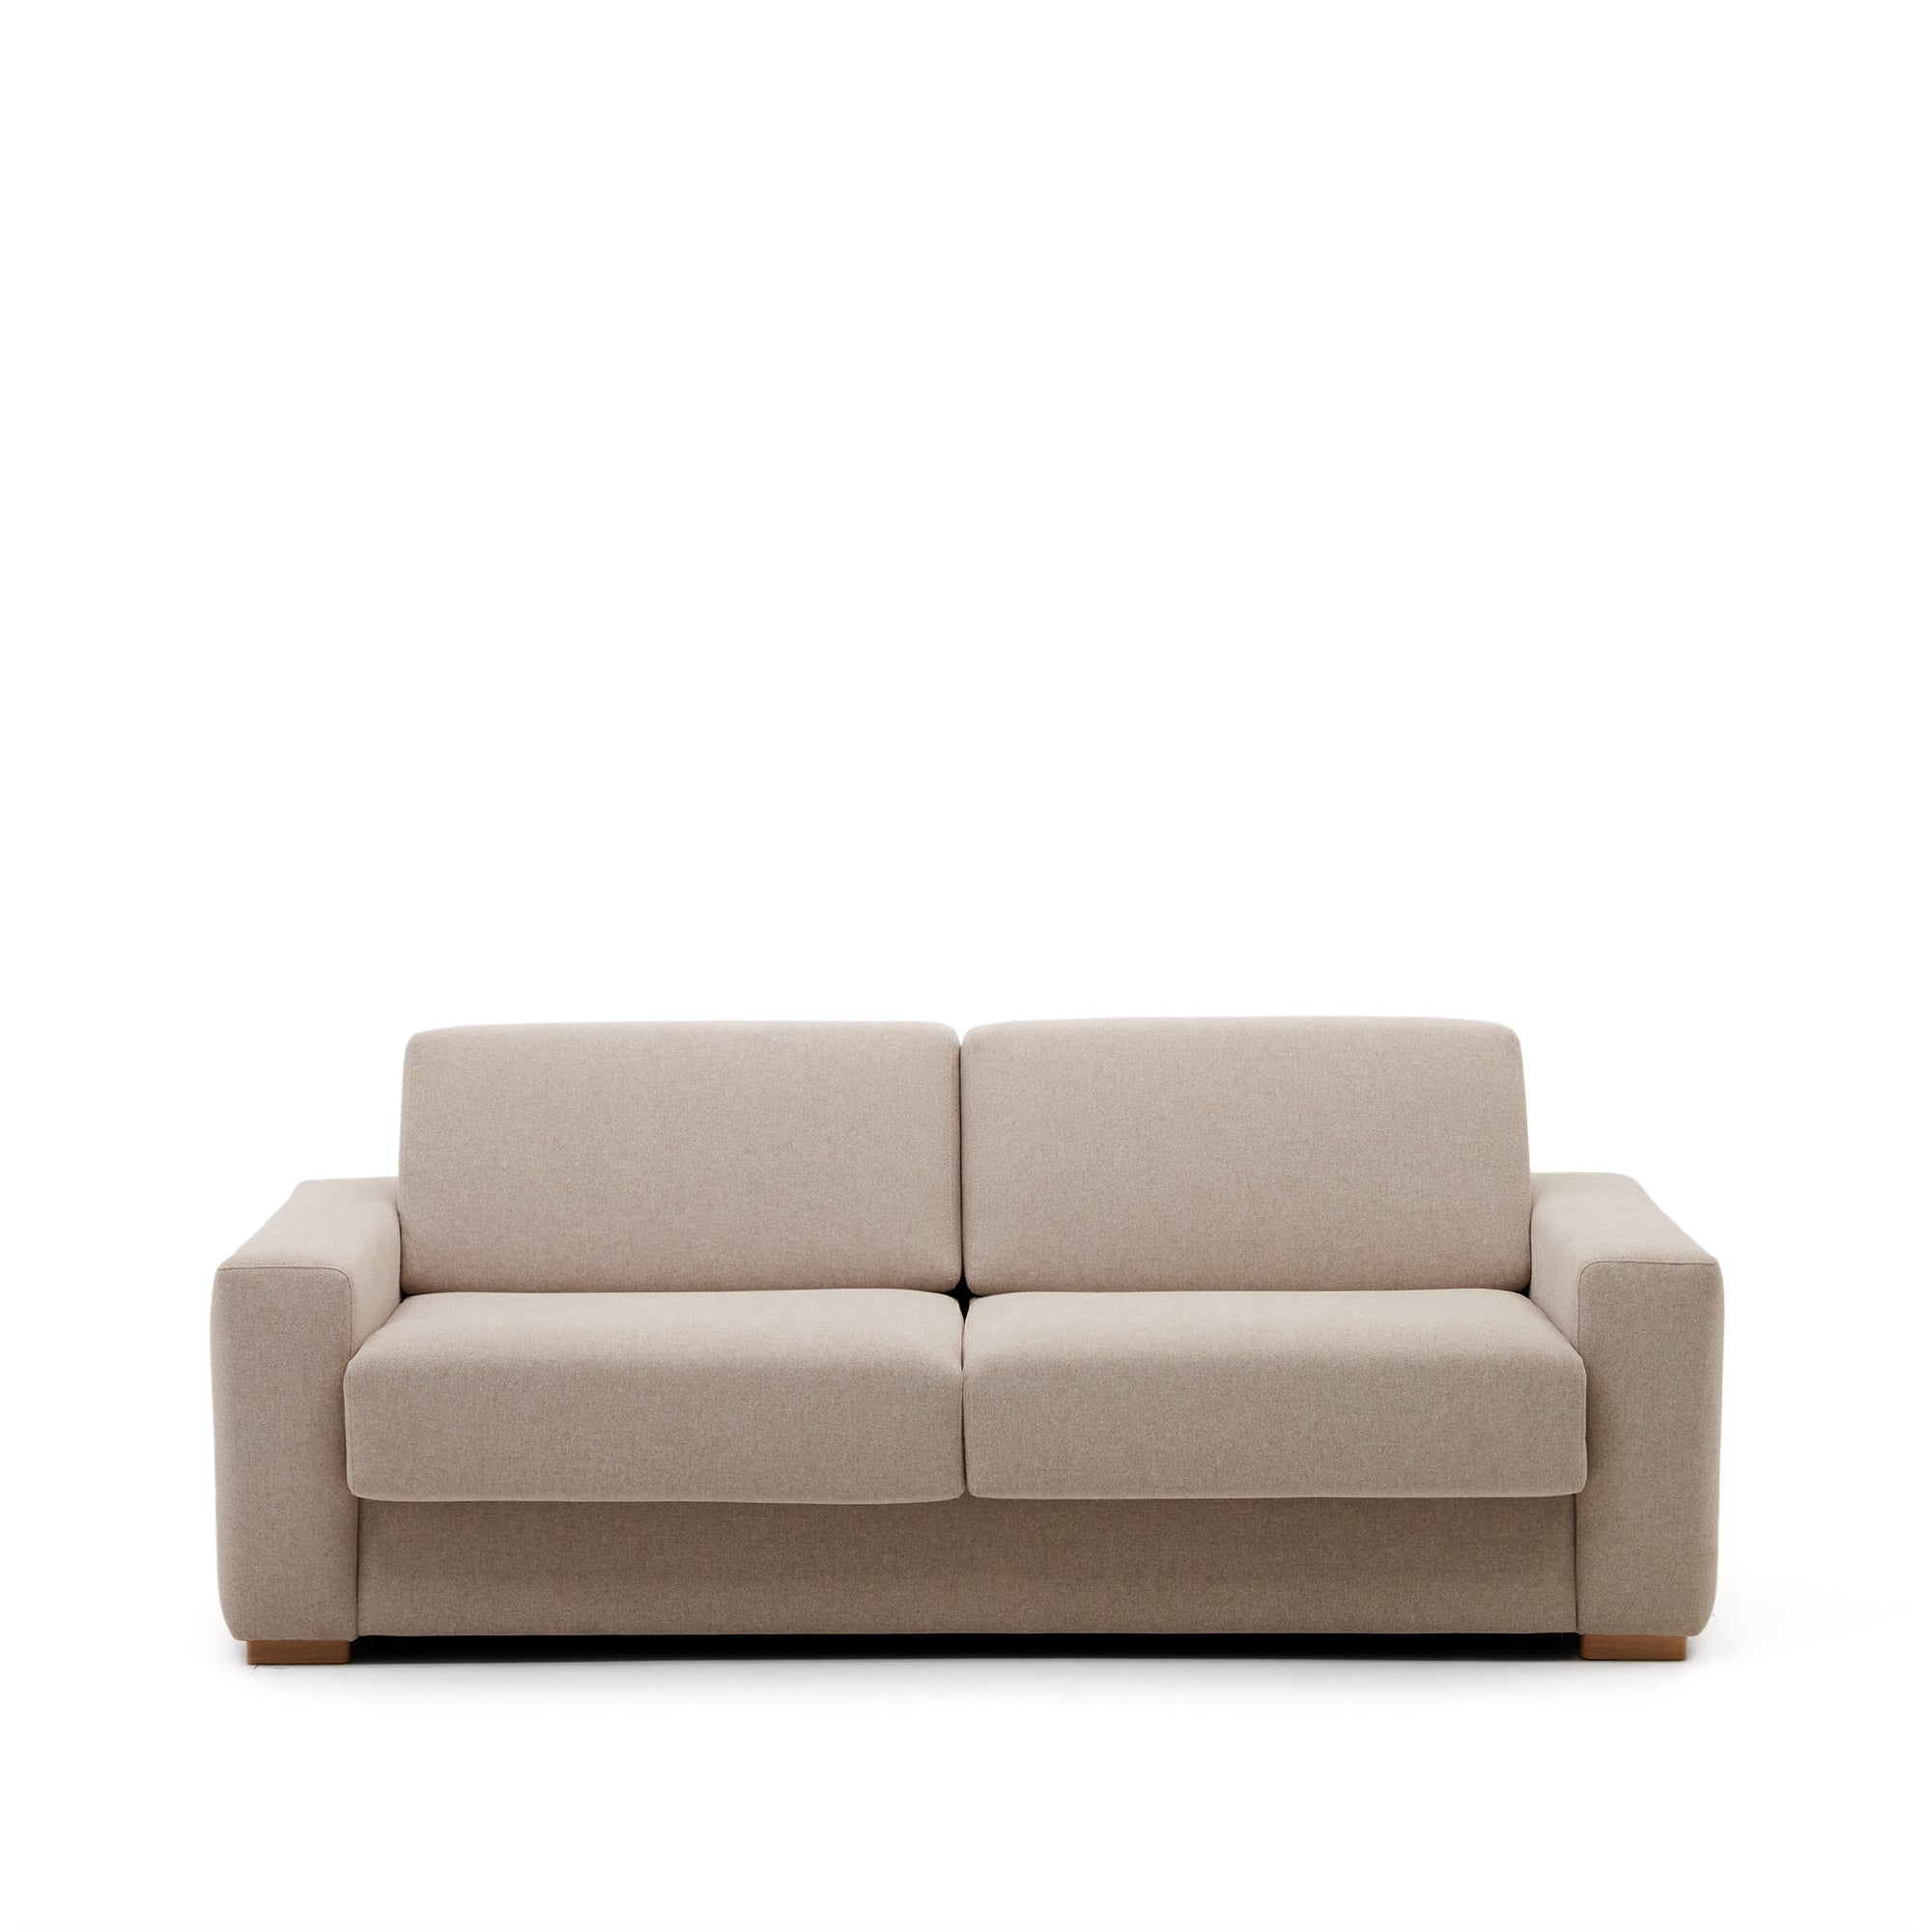 Anley 3 személyes kanapéágy bézs színben 224 cm